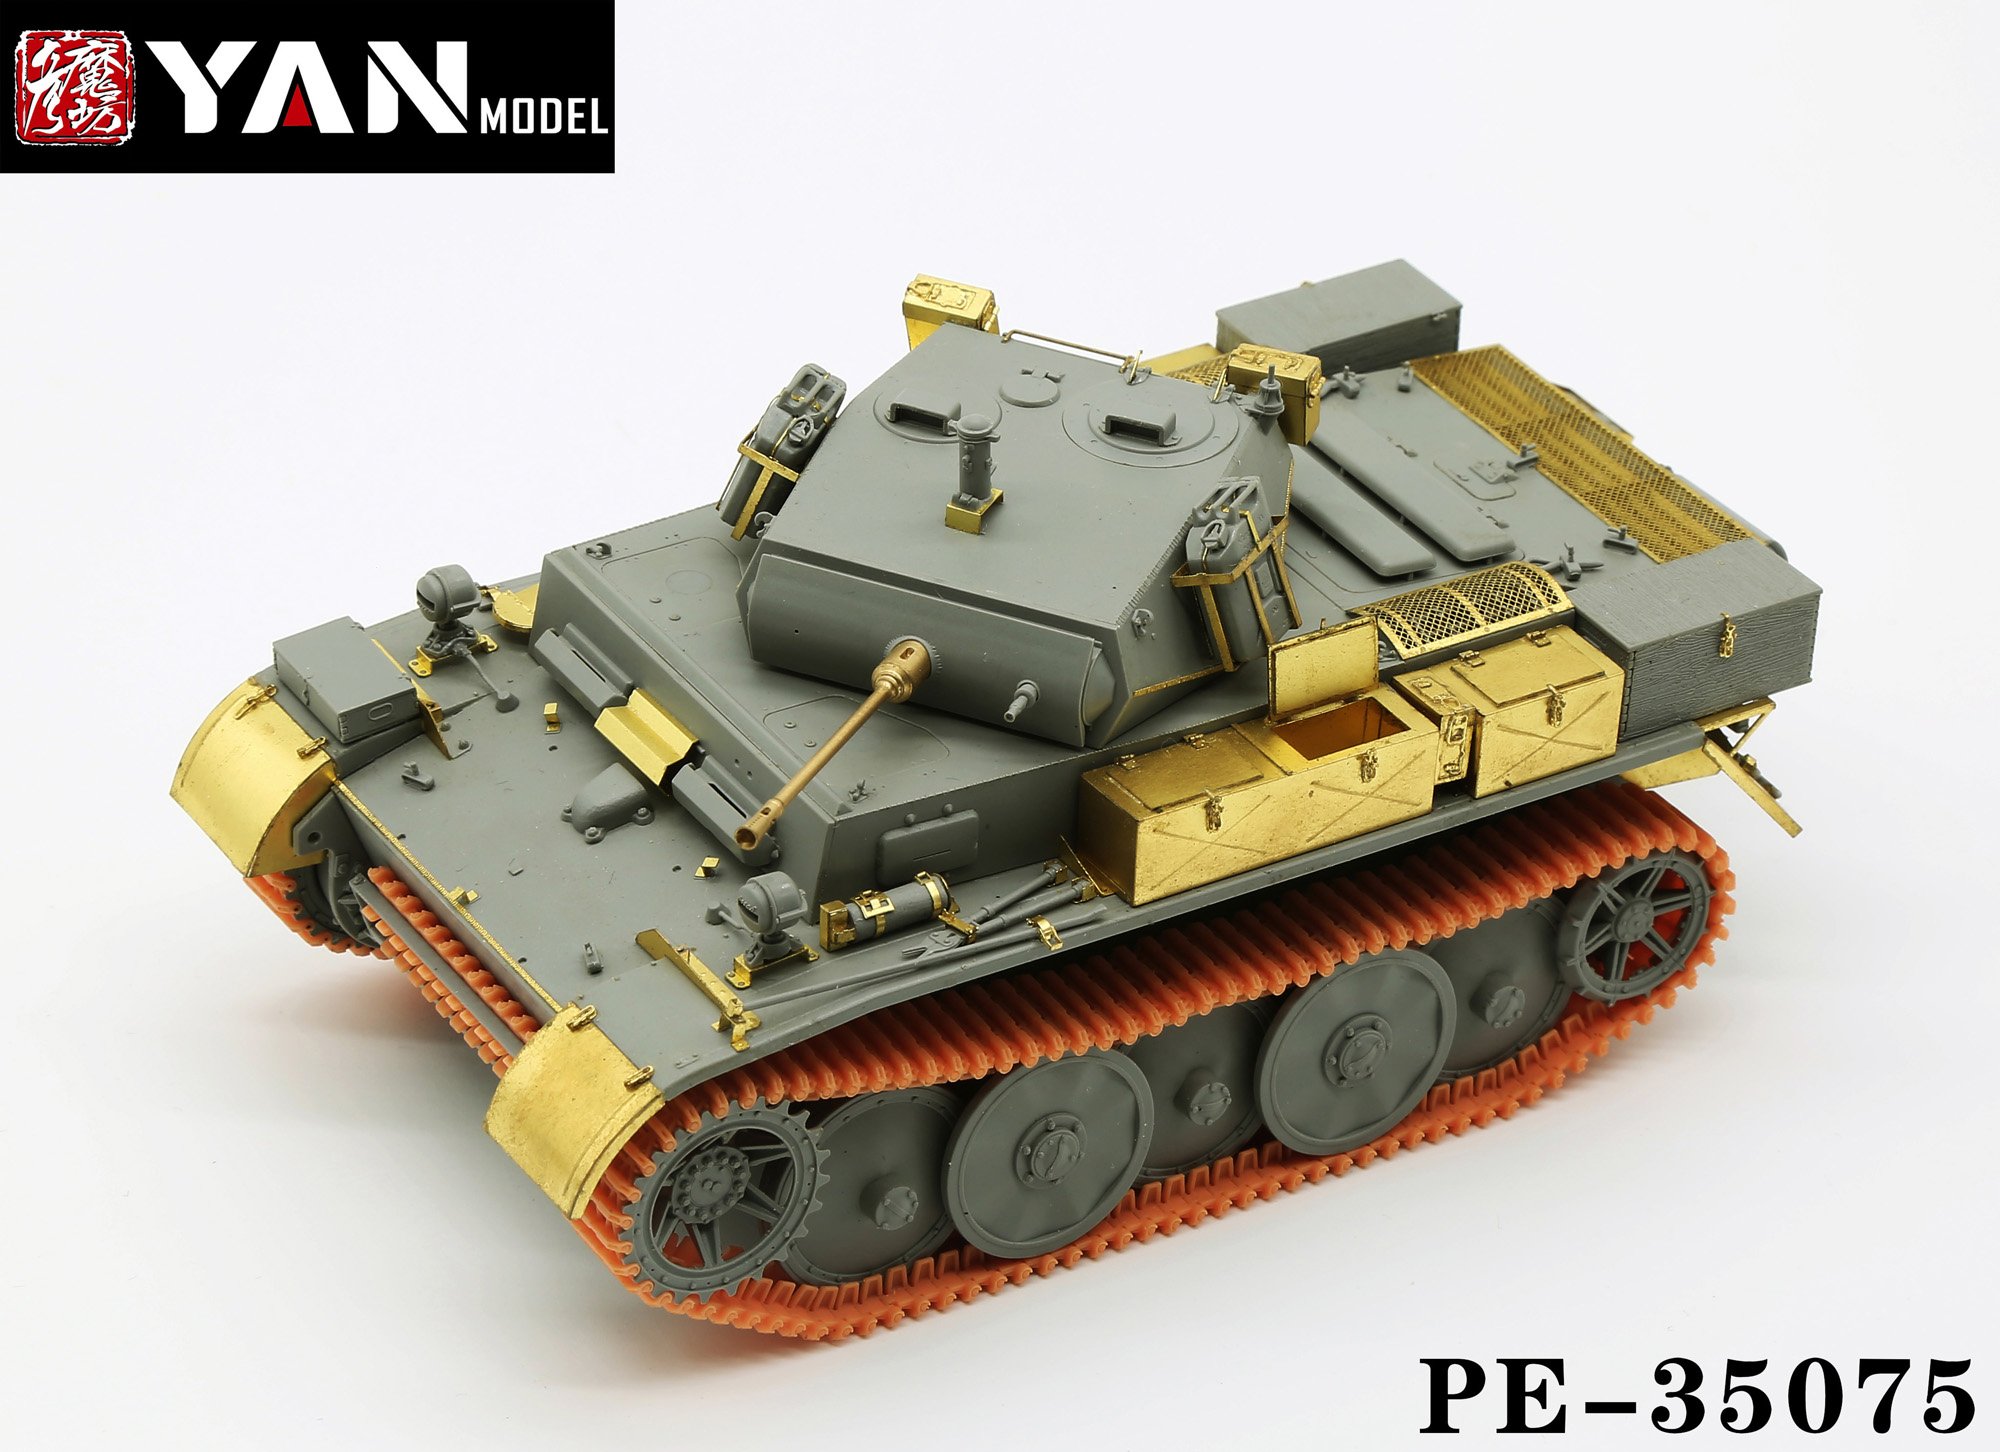 1/35 二战德国二号战车L型改造蚀刻片与树脂履带(配边境BT-018)